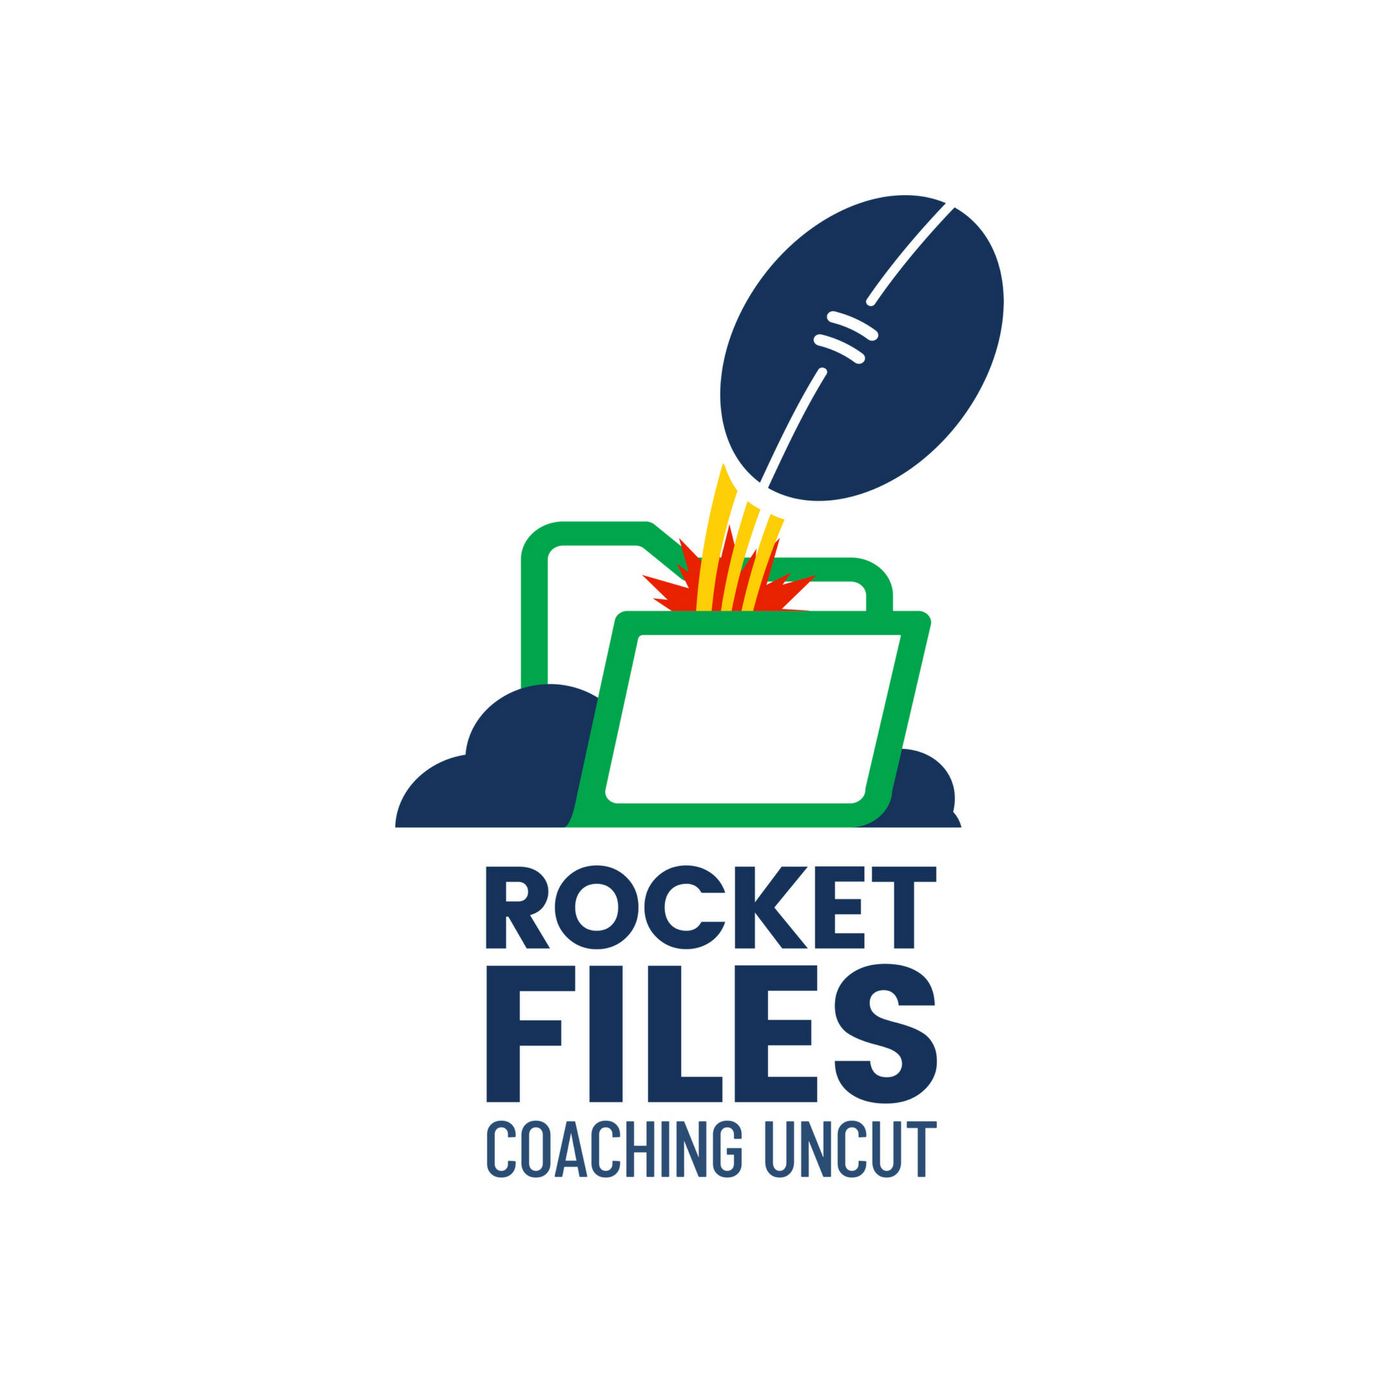 Rocket Files - Coaching Uncut